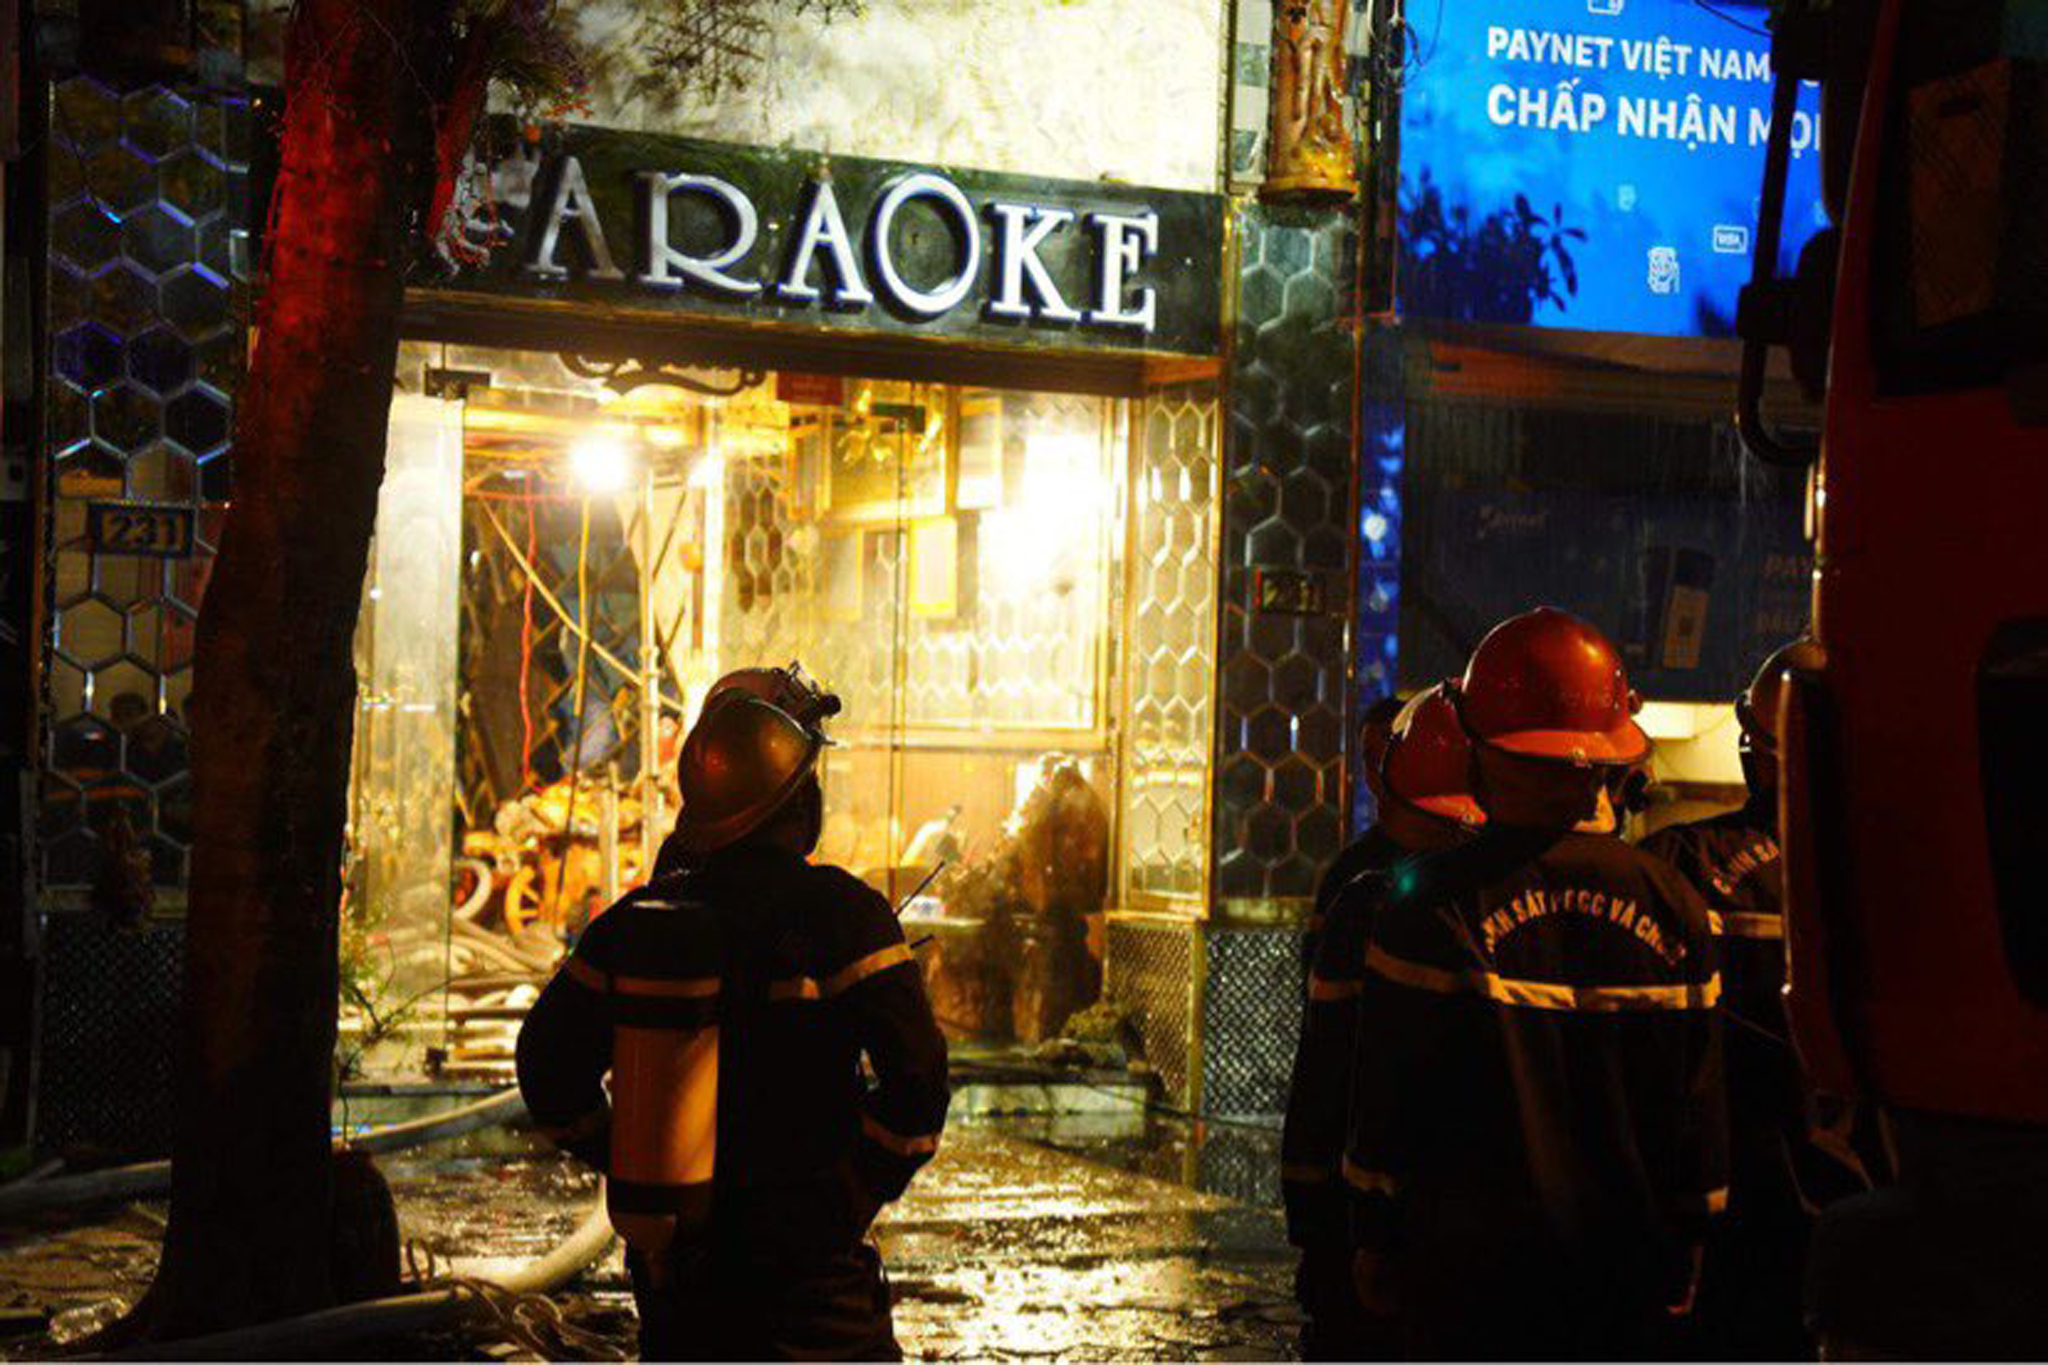 Ngày 1/8, đã xảy ra vụ cháy tại quán karaoke ở phường Quan Hoa, Cầu Giấy, Hà Nội khiến 3 cảnh sát hy sinh khi đang làm nhiệm vụ.